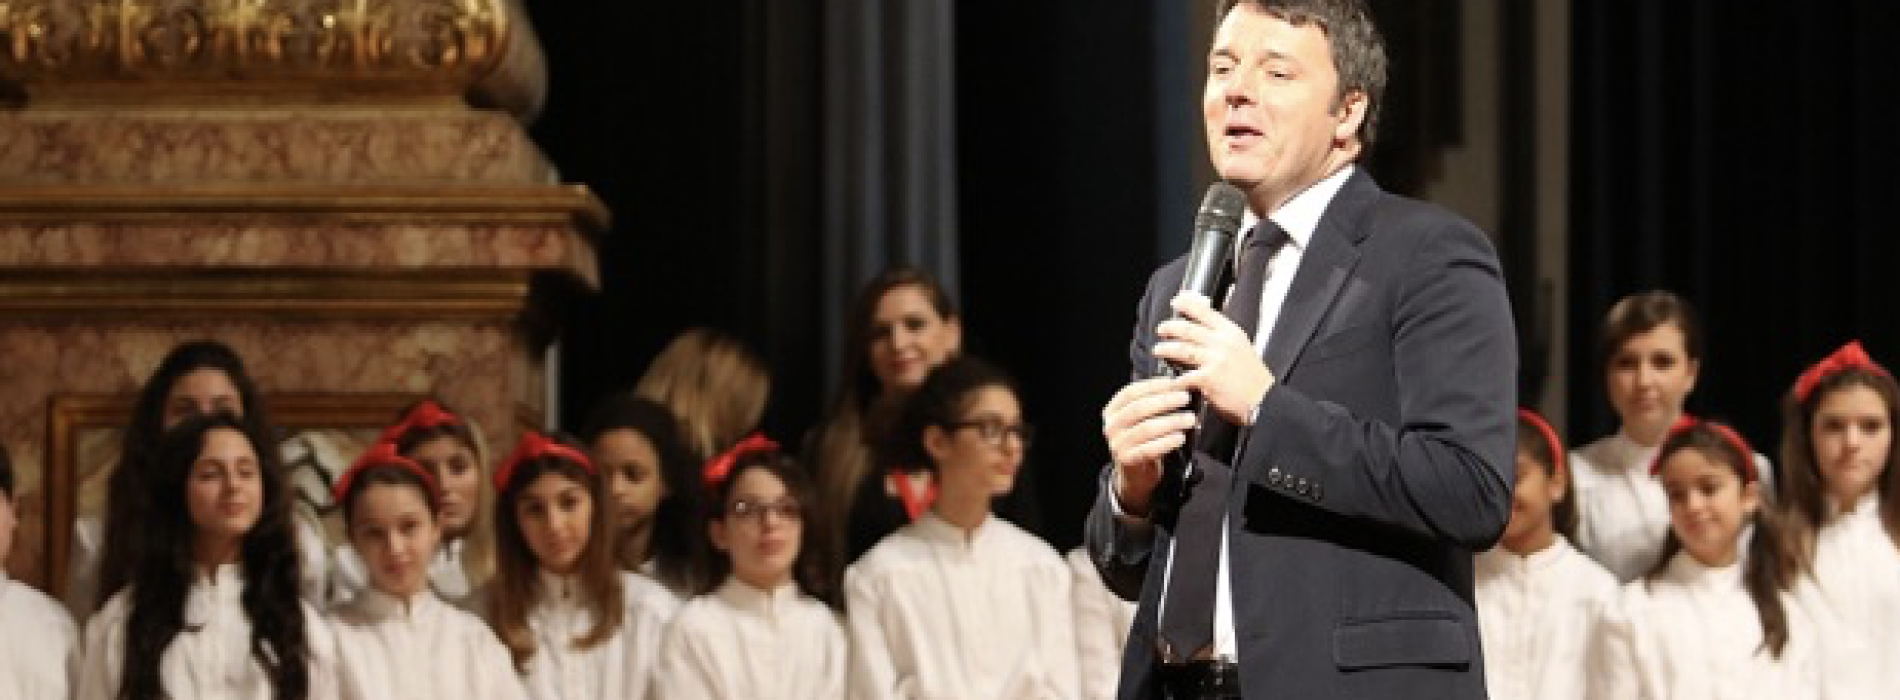 Confermato. Il premier Renzi va a scuola a San Tammaro